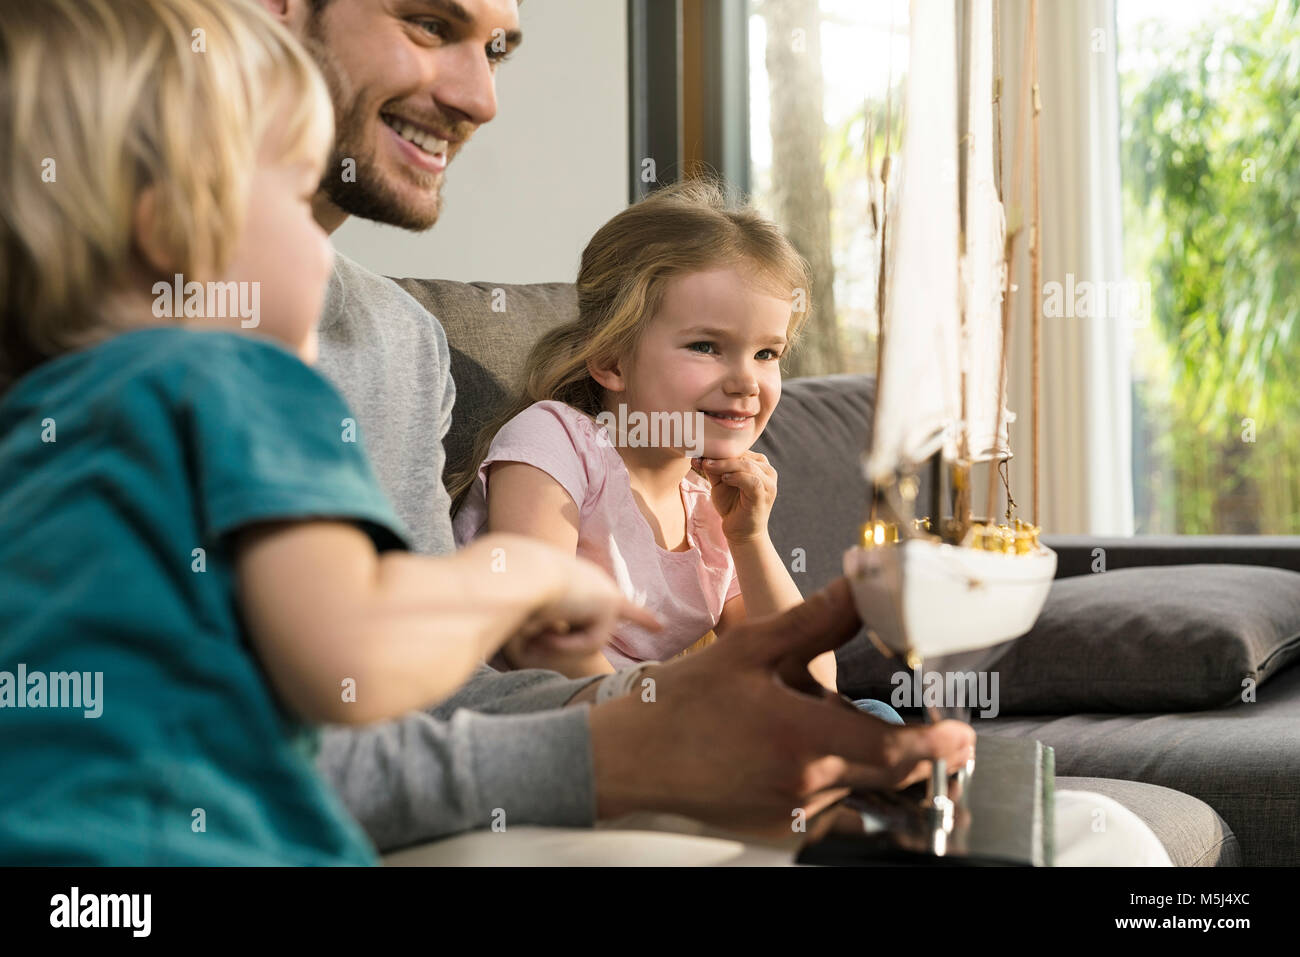 Lächelnd Vater und Kinder im Toy model ship Suchen auf der Couch zu Hause Stockfoto